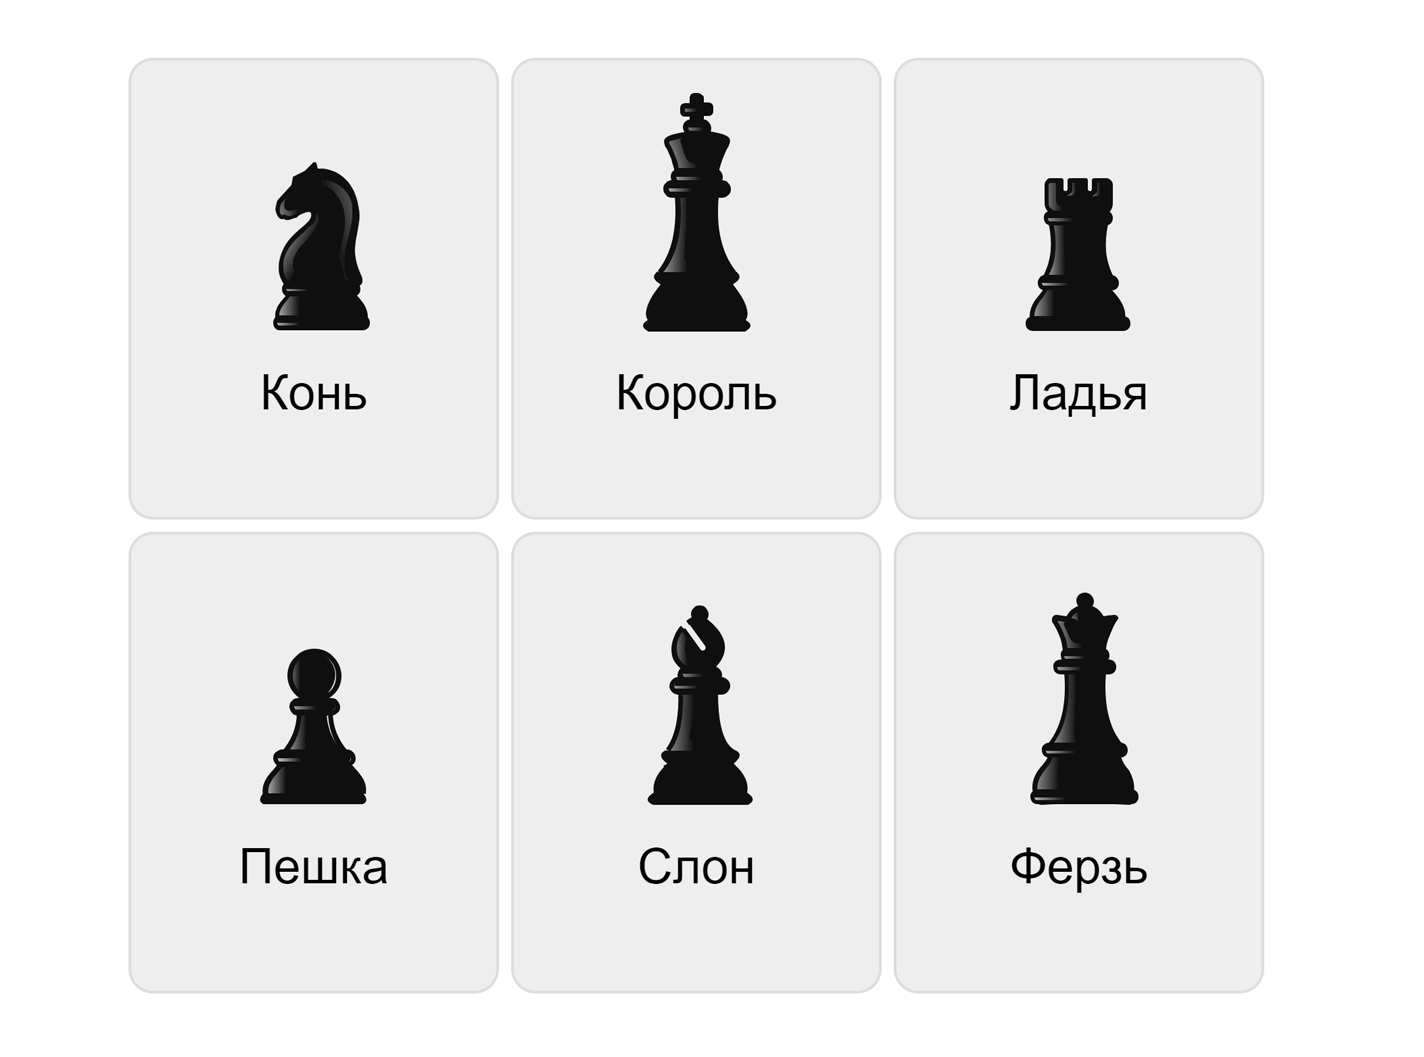 Schachfiguren auf Russisch